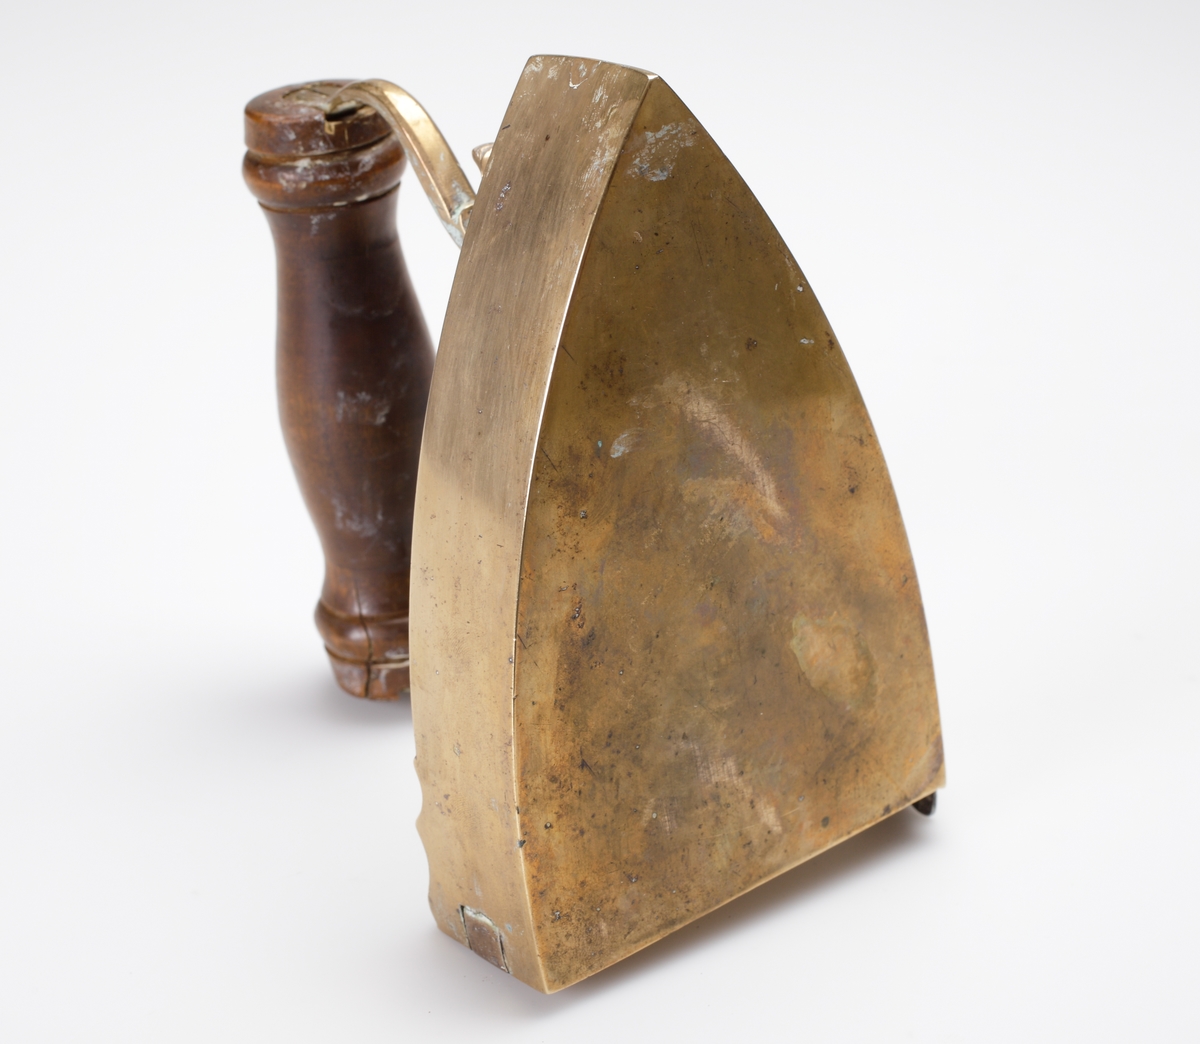 Lodstrykjärn av mässing. 
Försett med handtag av svarvat trä, lucka för kol. Graverat motiv på ovansidan av strykjärnet i form av blomdekor och årtal:"1832".